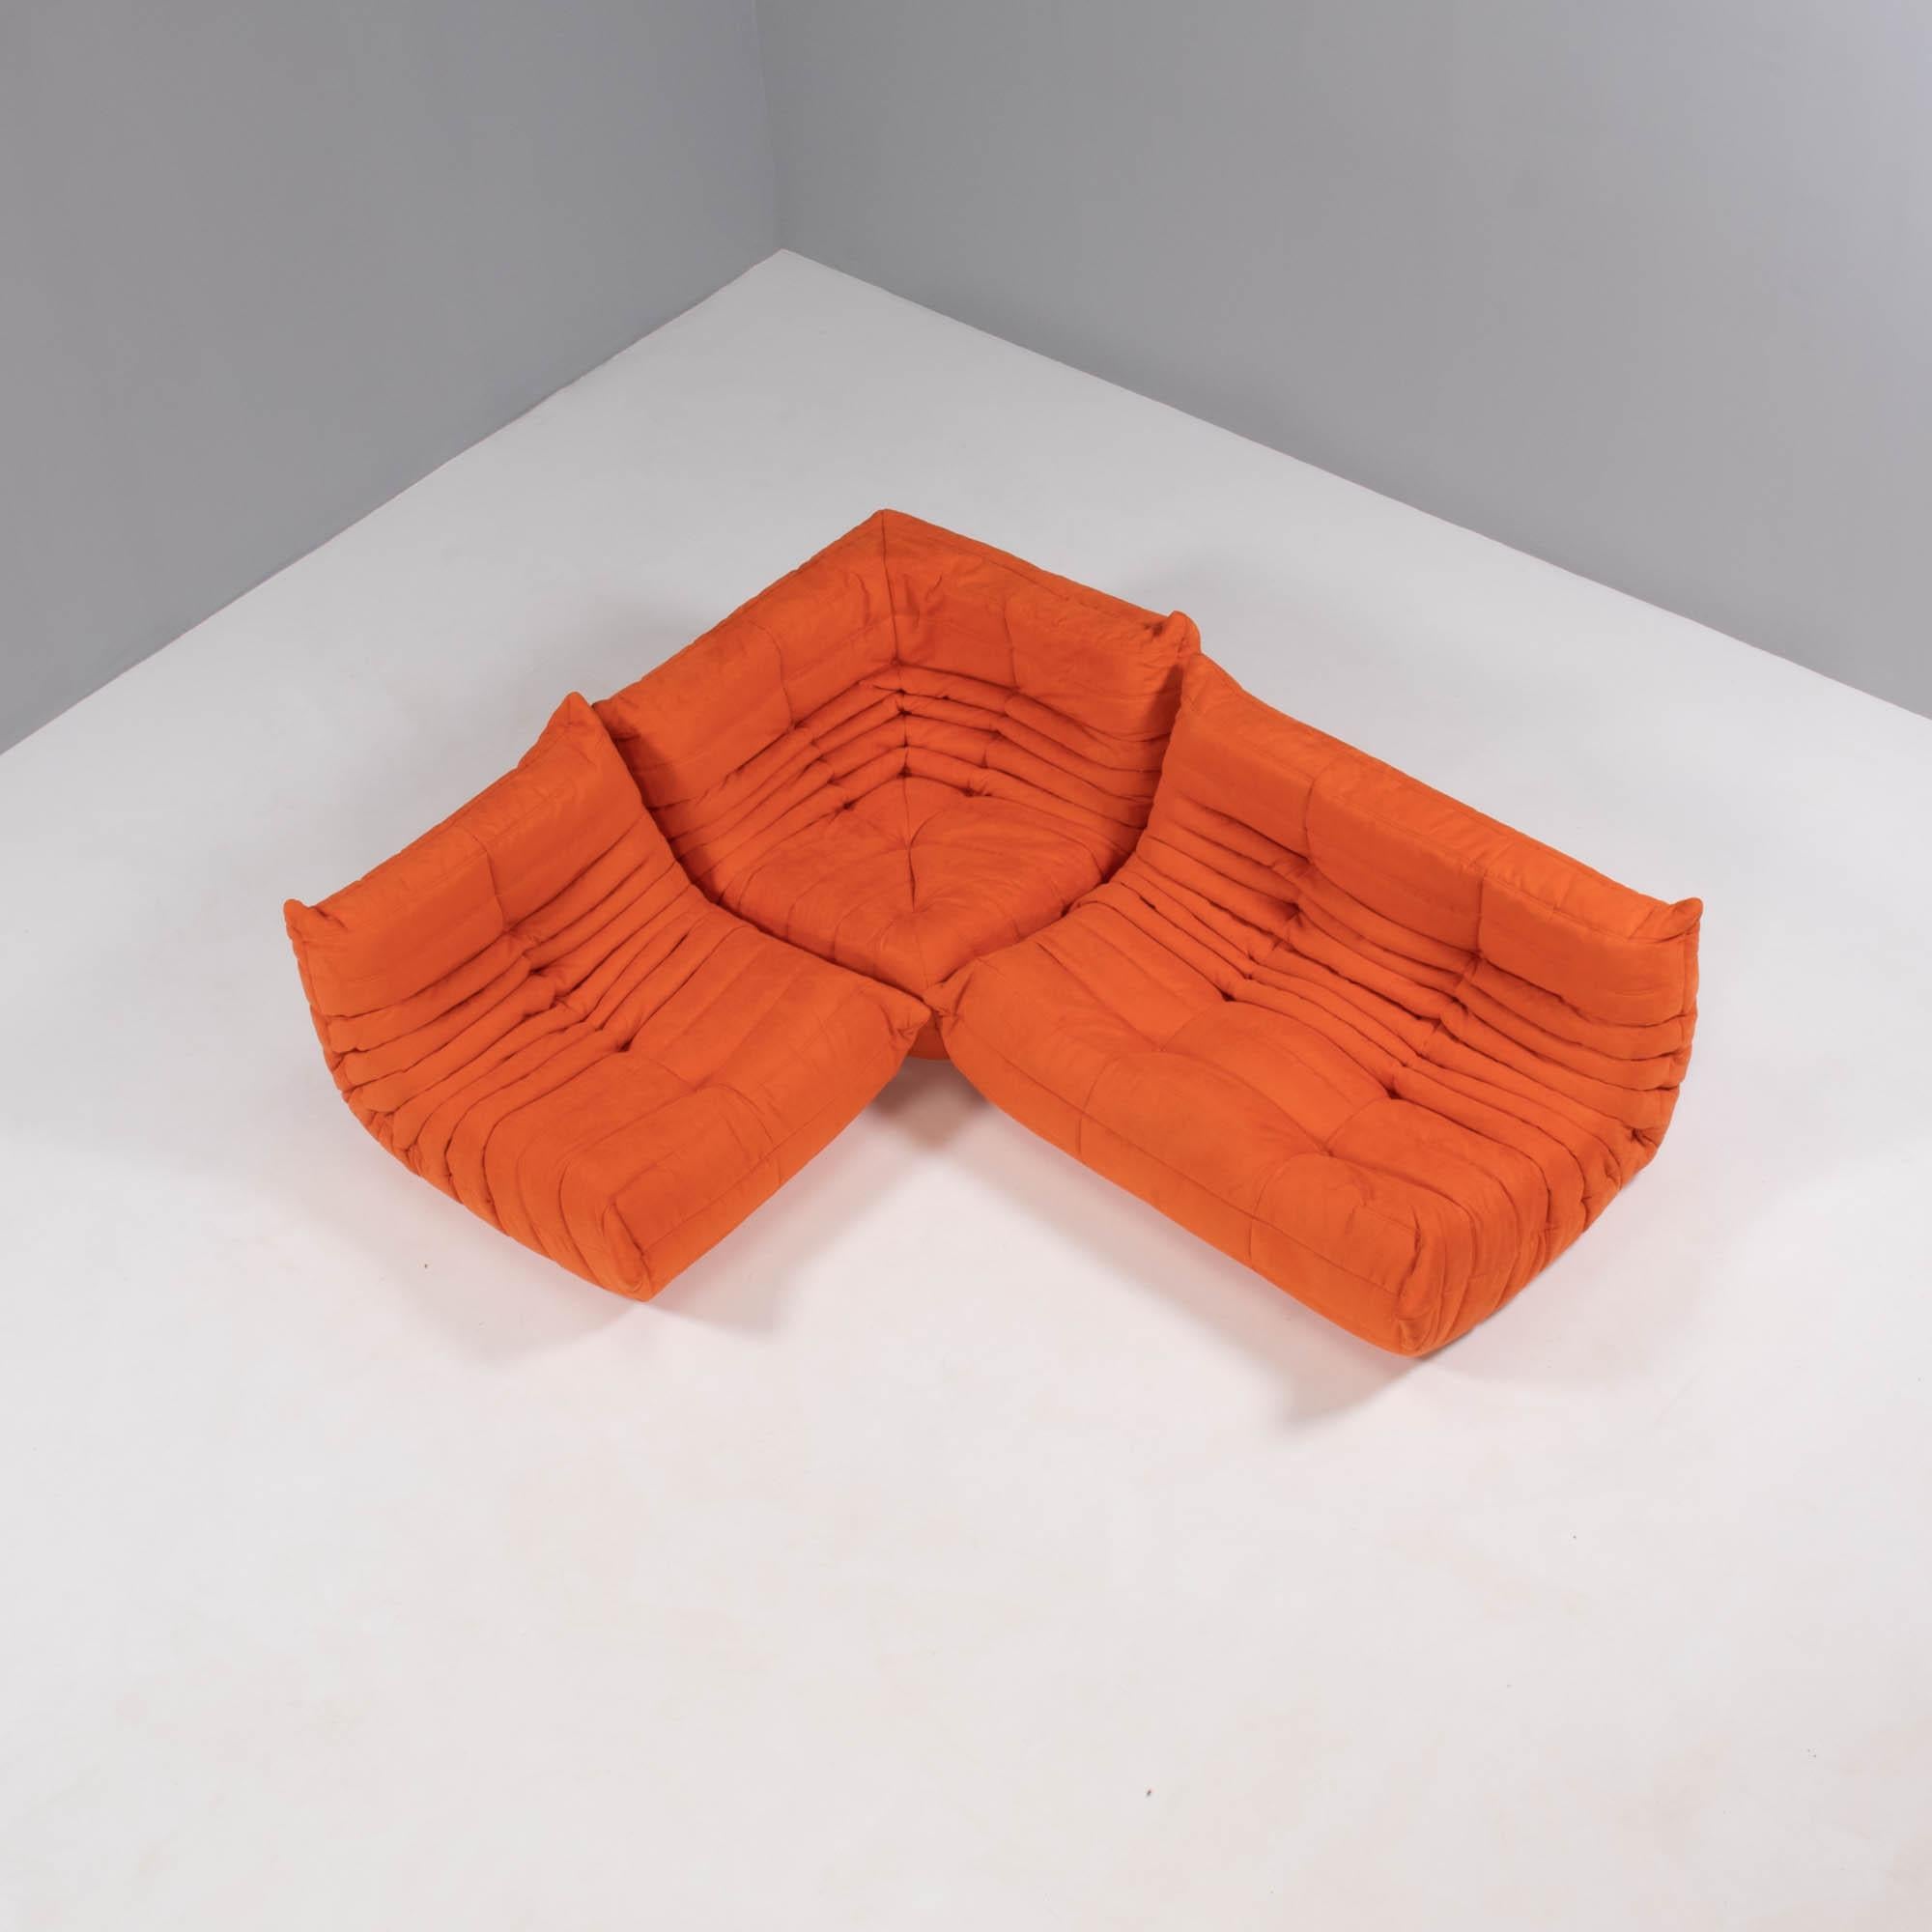 Das ikonische Sofa Togo, das Michel Ducaroy 1973 für Ligne Roset entworfen hat, ist ein Designklassiker geworden.

Dieses dreiteilige modulare Set ist unglaublich vielseitig und kann zu einem großen Ecksofa konfiguriert oder für eine Vielzahl von